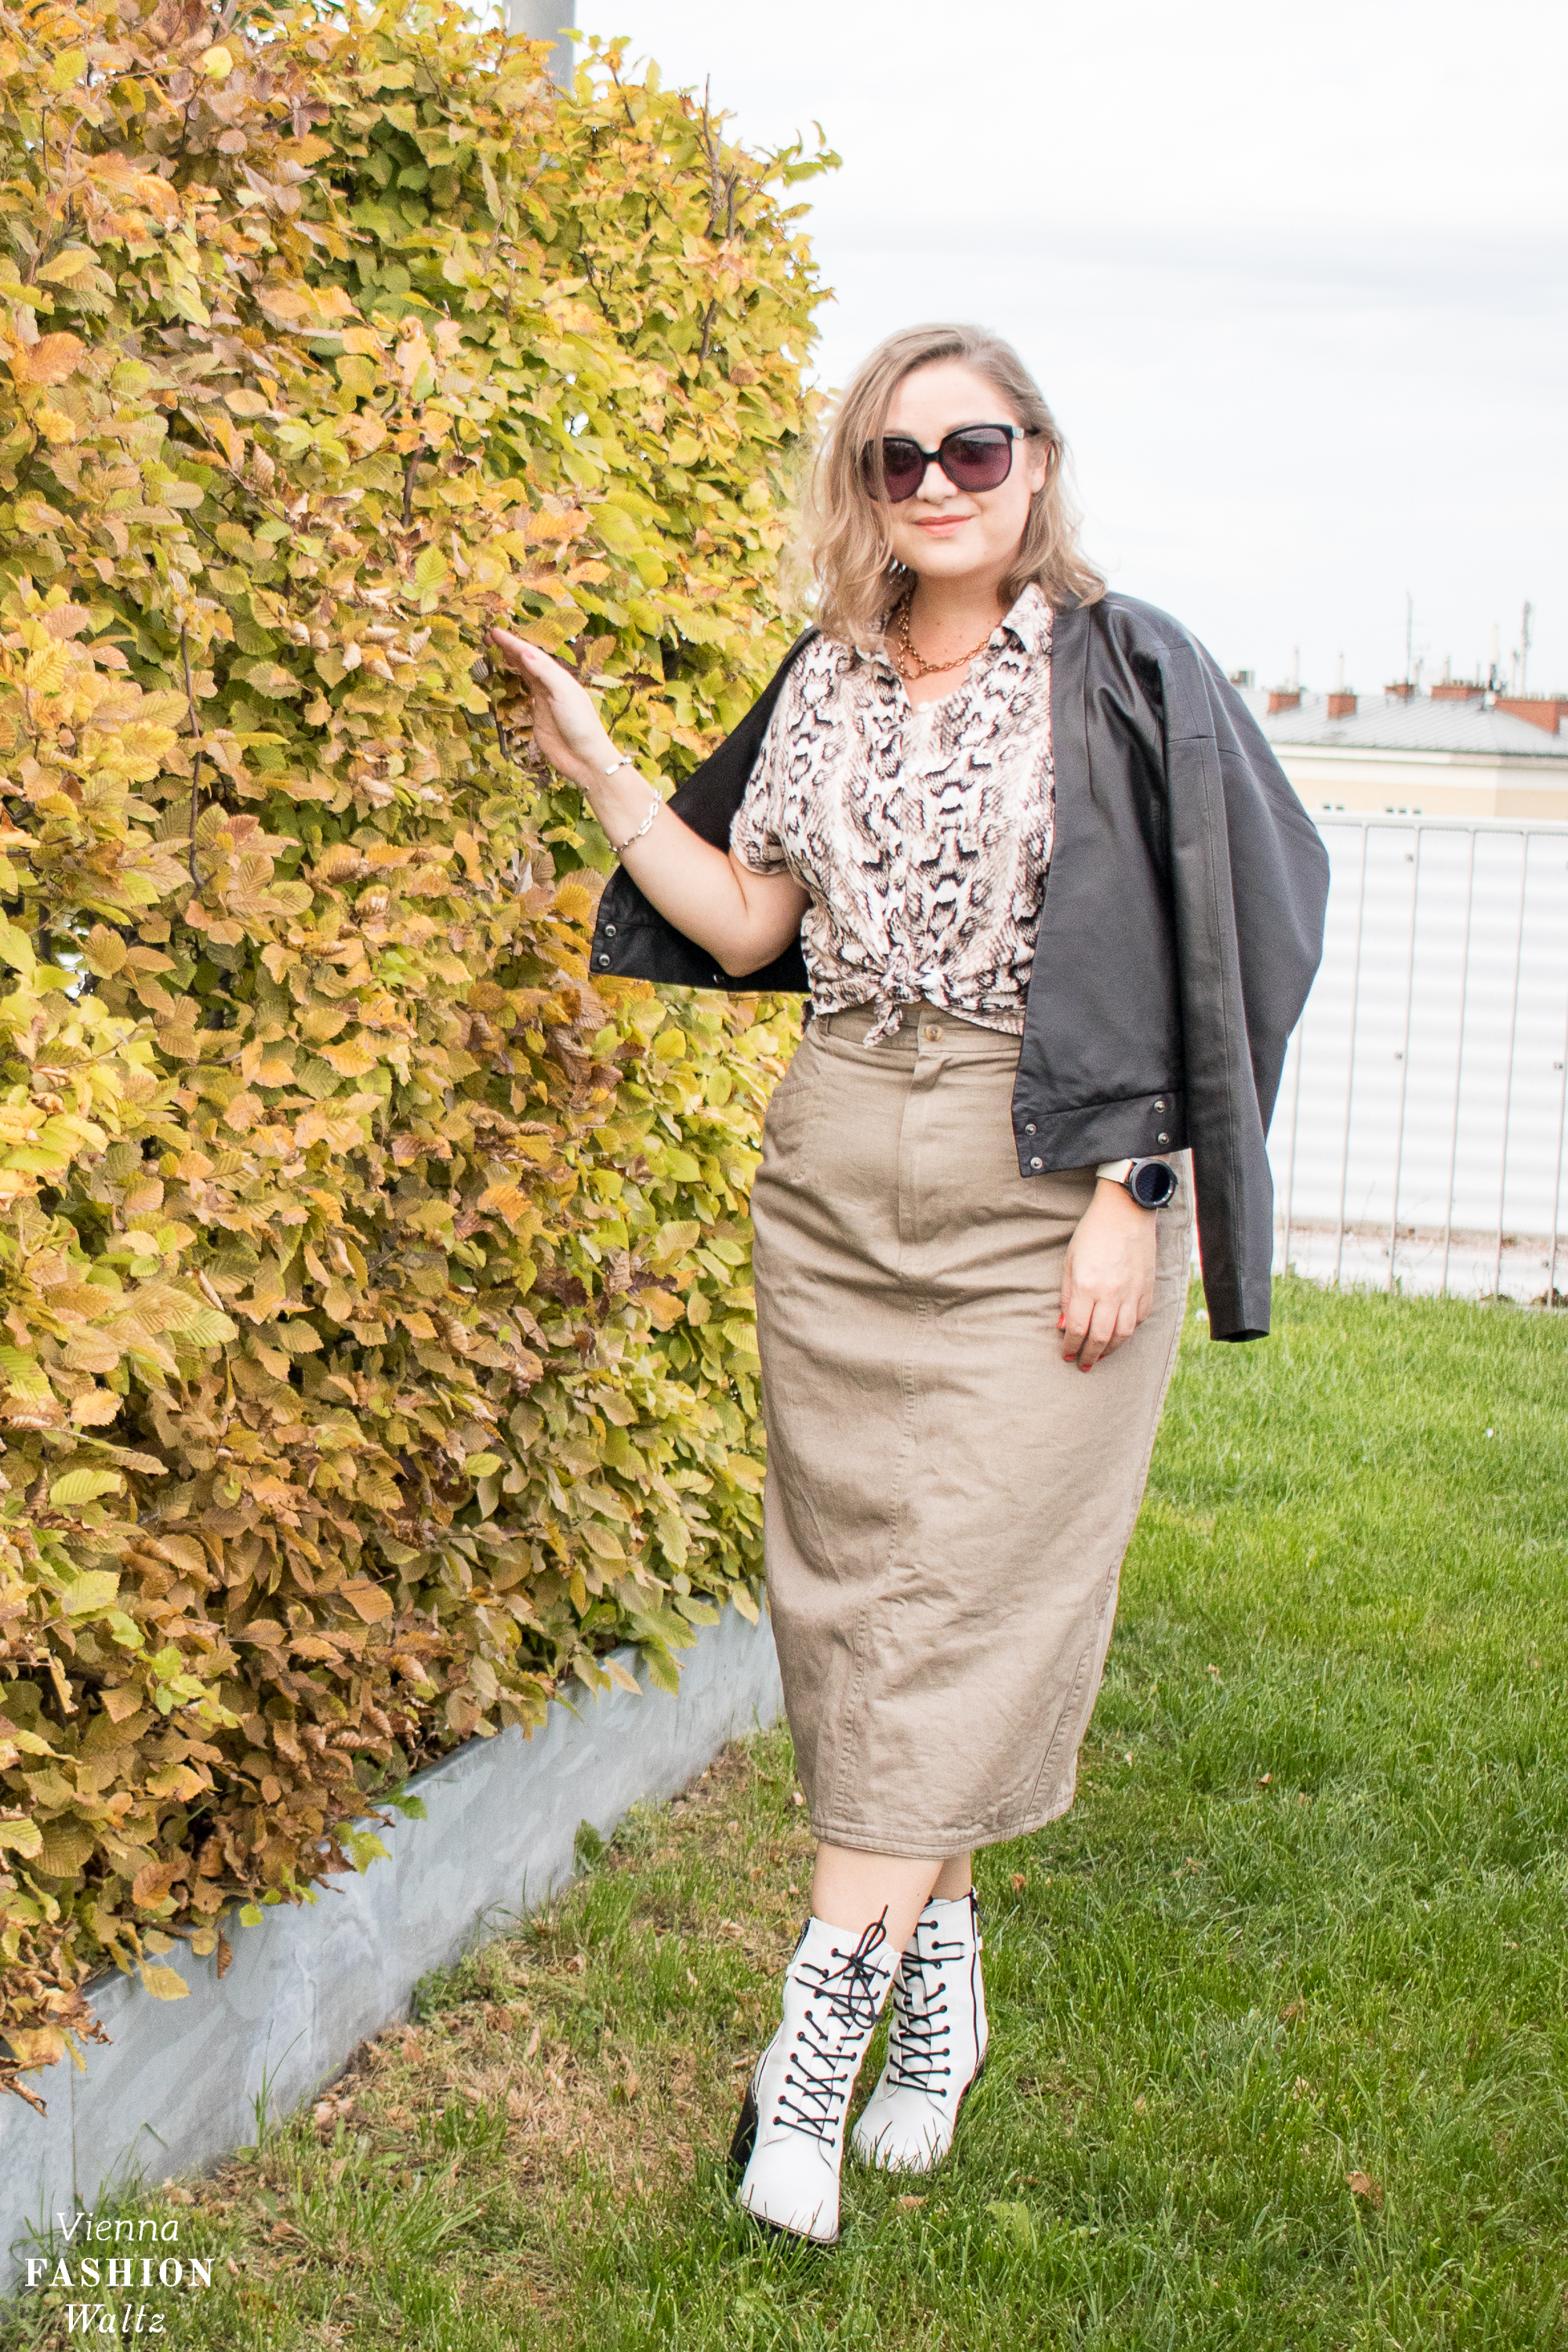 Herbst Outfit und die besten Trends für den Übergang, stylishe Ideen für einen coolen Look